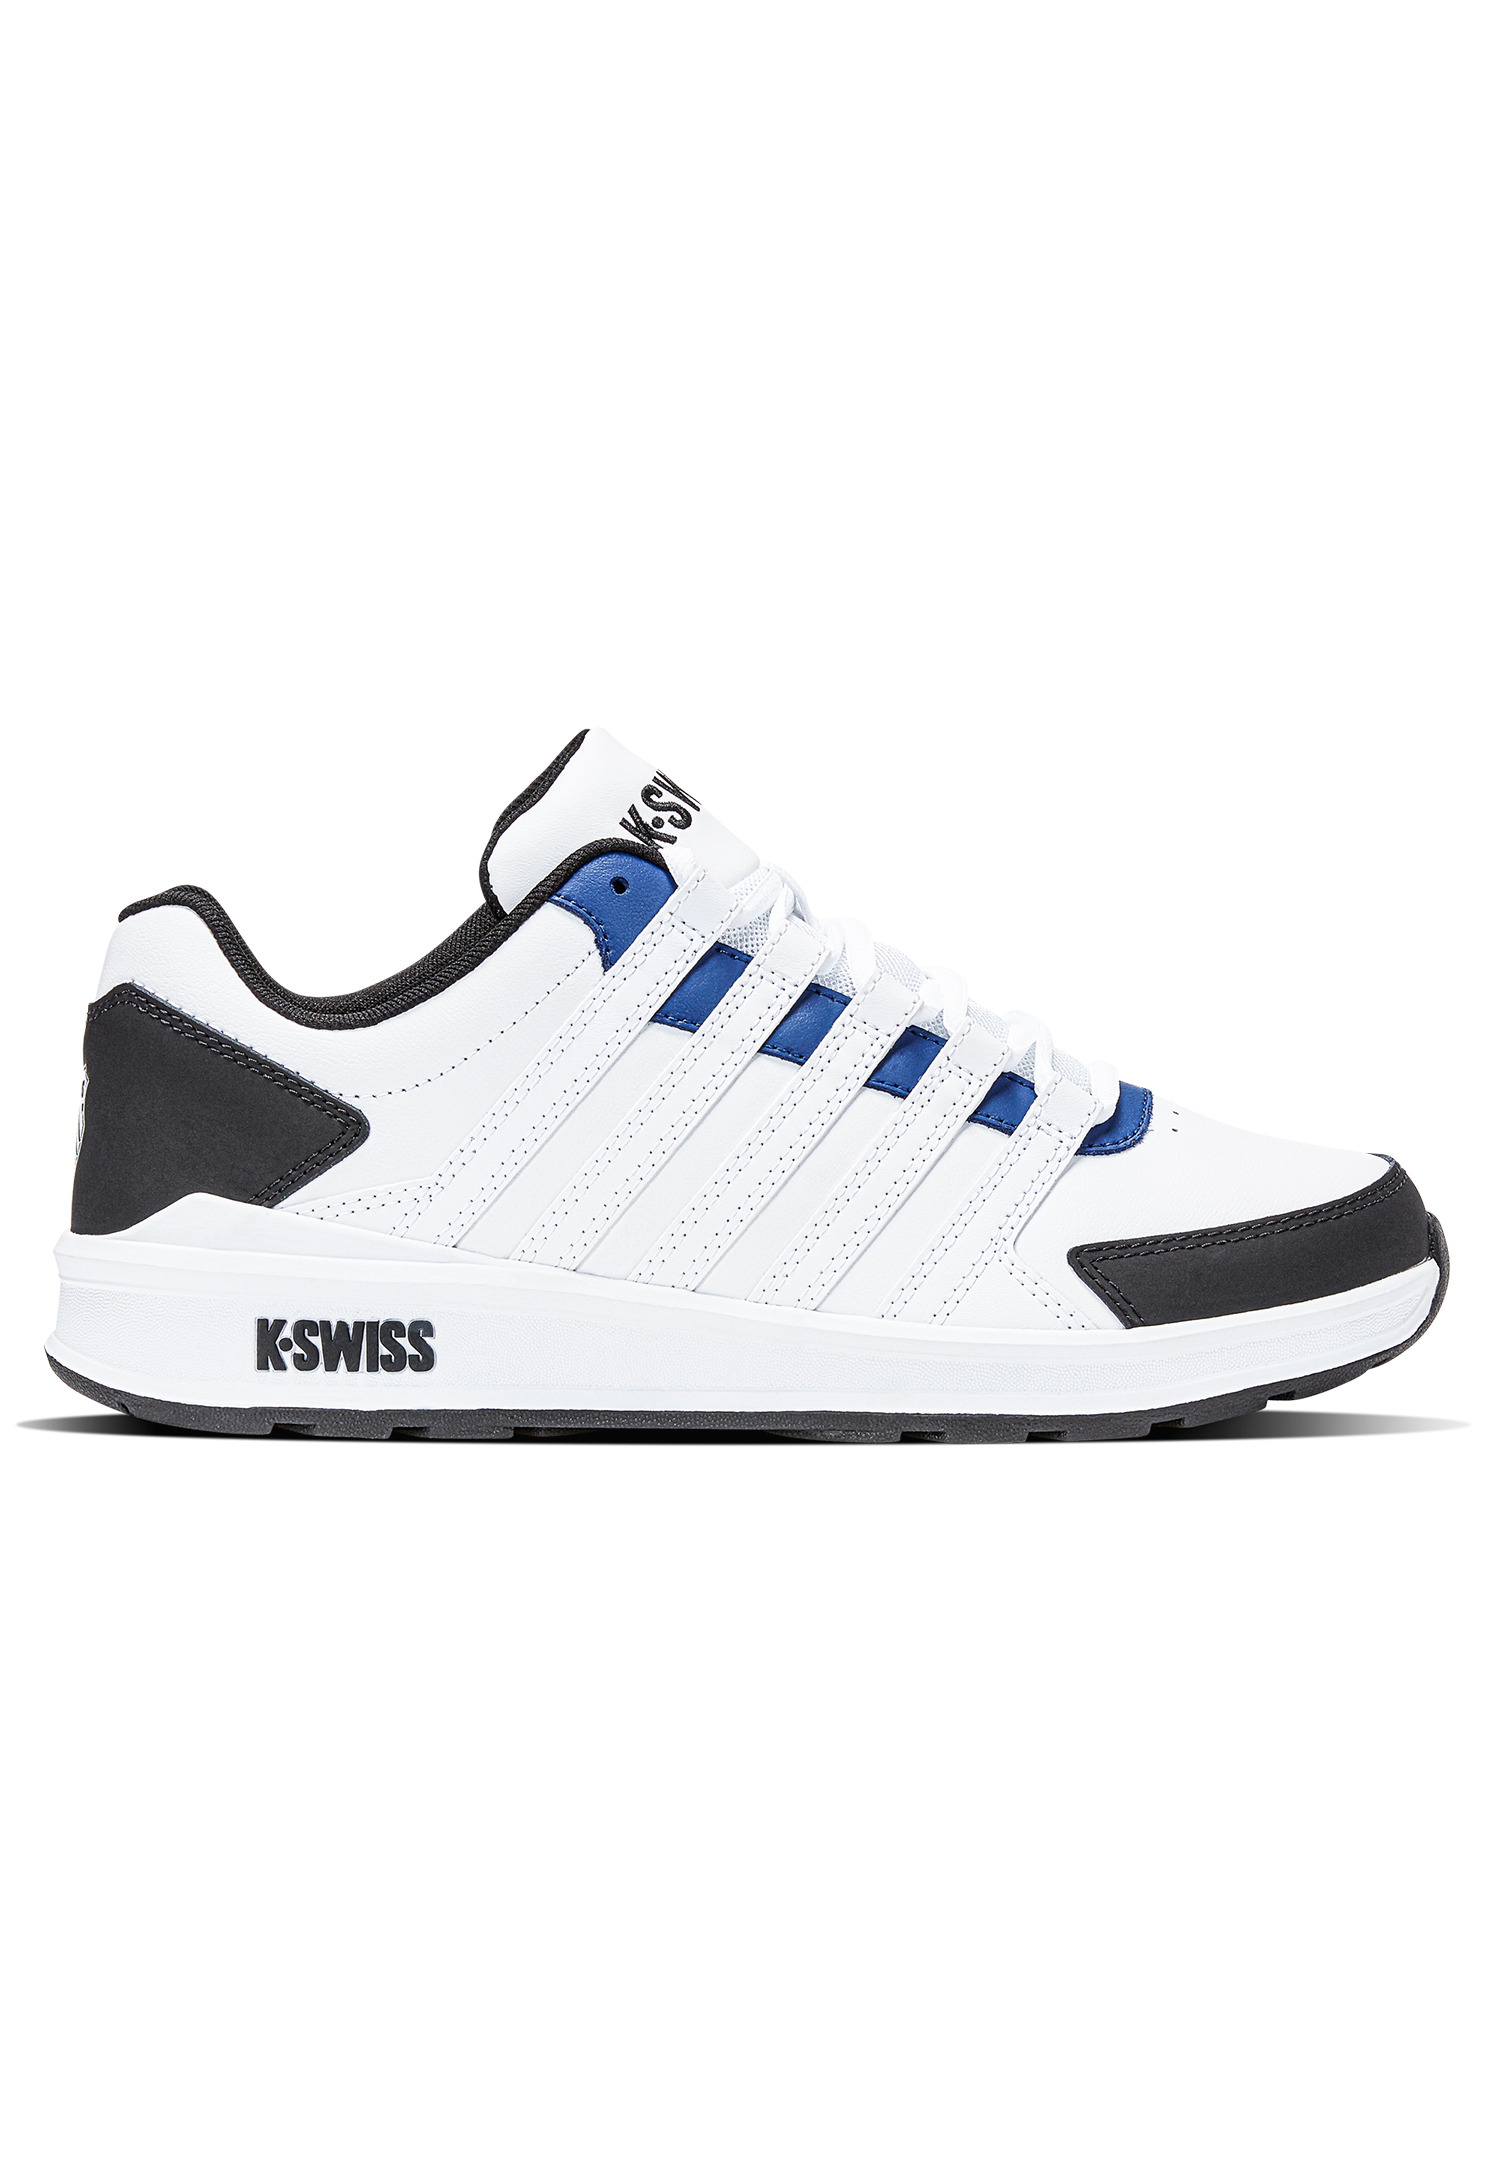 K-Swiss Herren Vista Trainer Sneaker Sportschuh 07000-996-M weiss/blau/schwarz